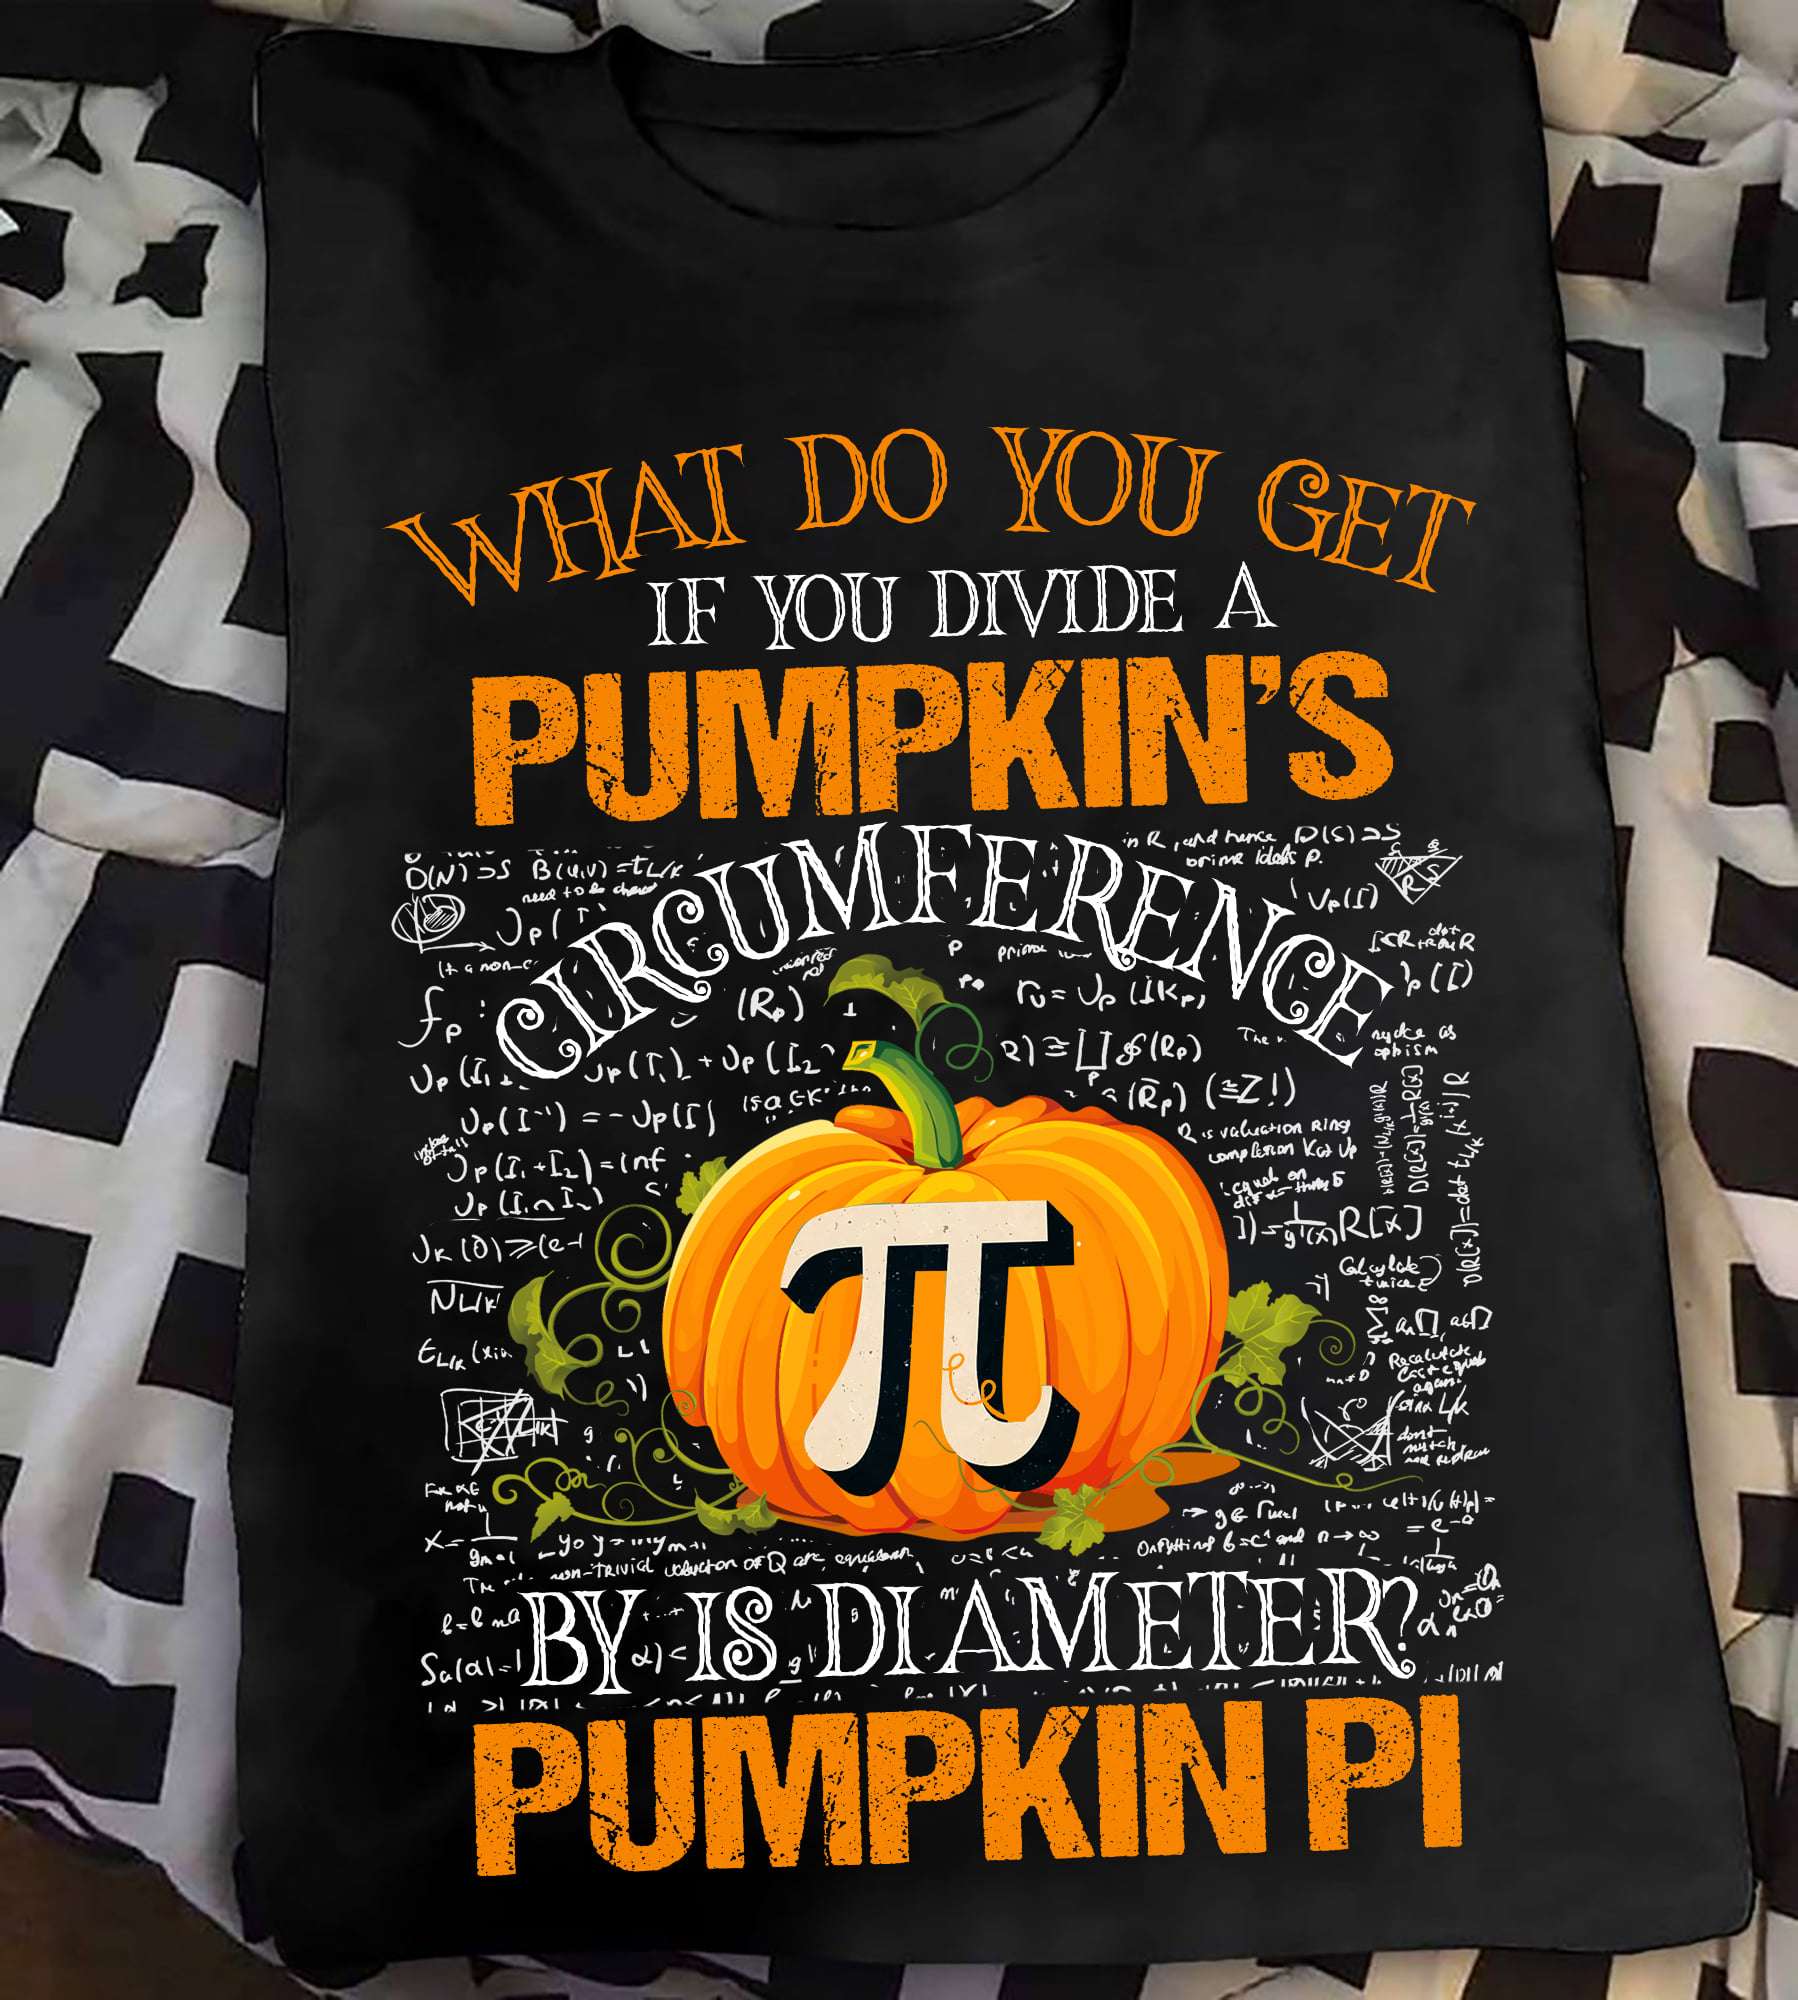 Hallowen Pumpkin - What do you get if you divide a pumpkin's circumference by is diamter pumpkin pi